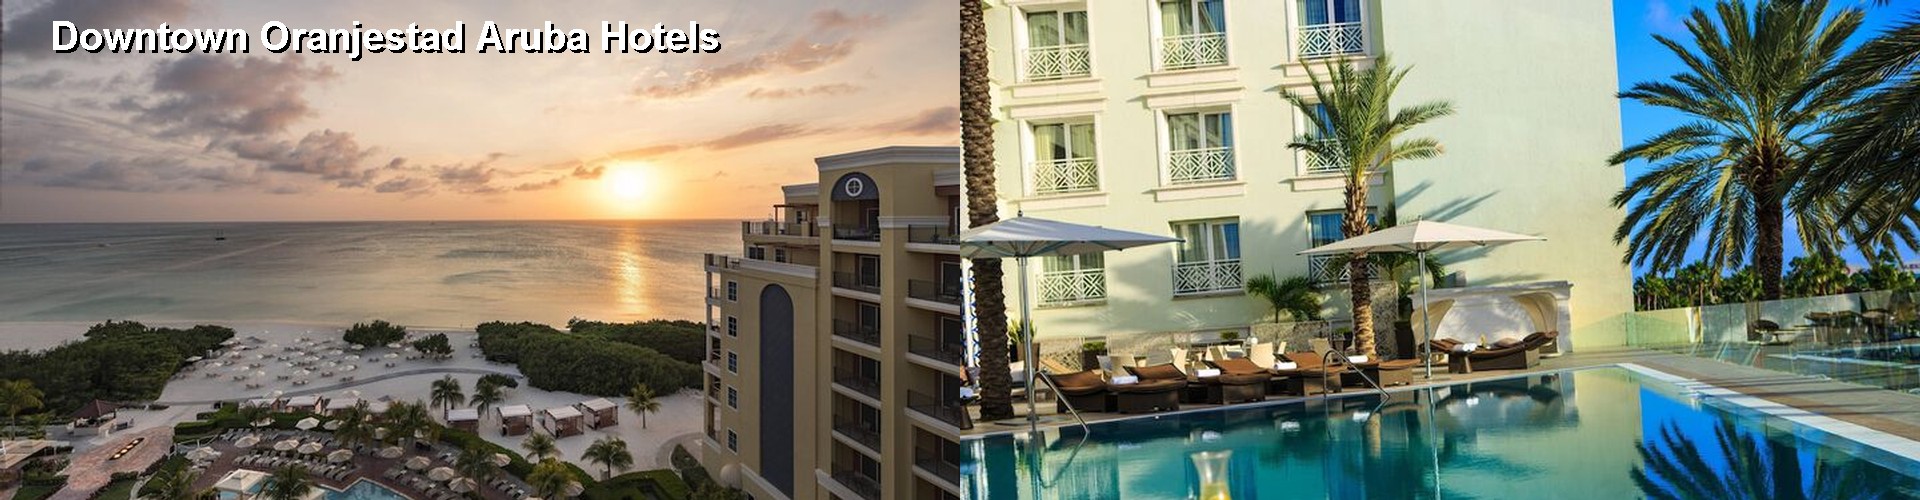 5 Best Hotels near Downtown Oranjestad Aruba